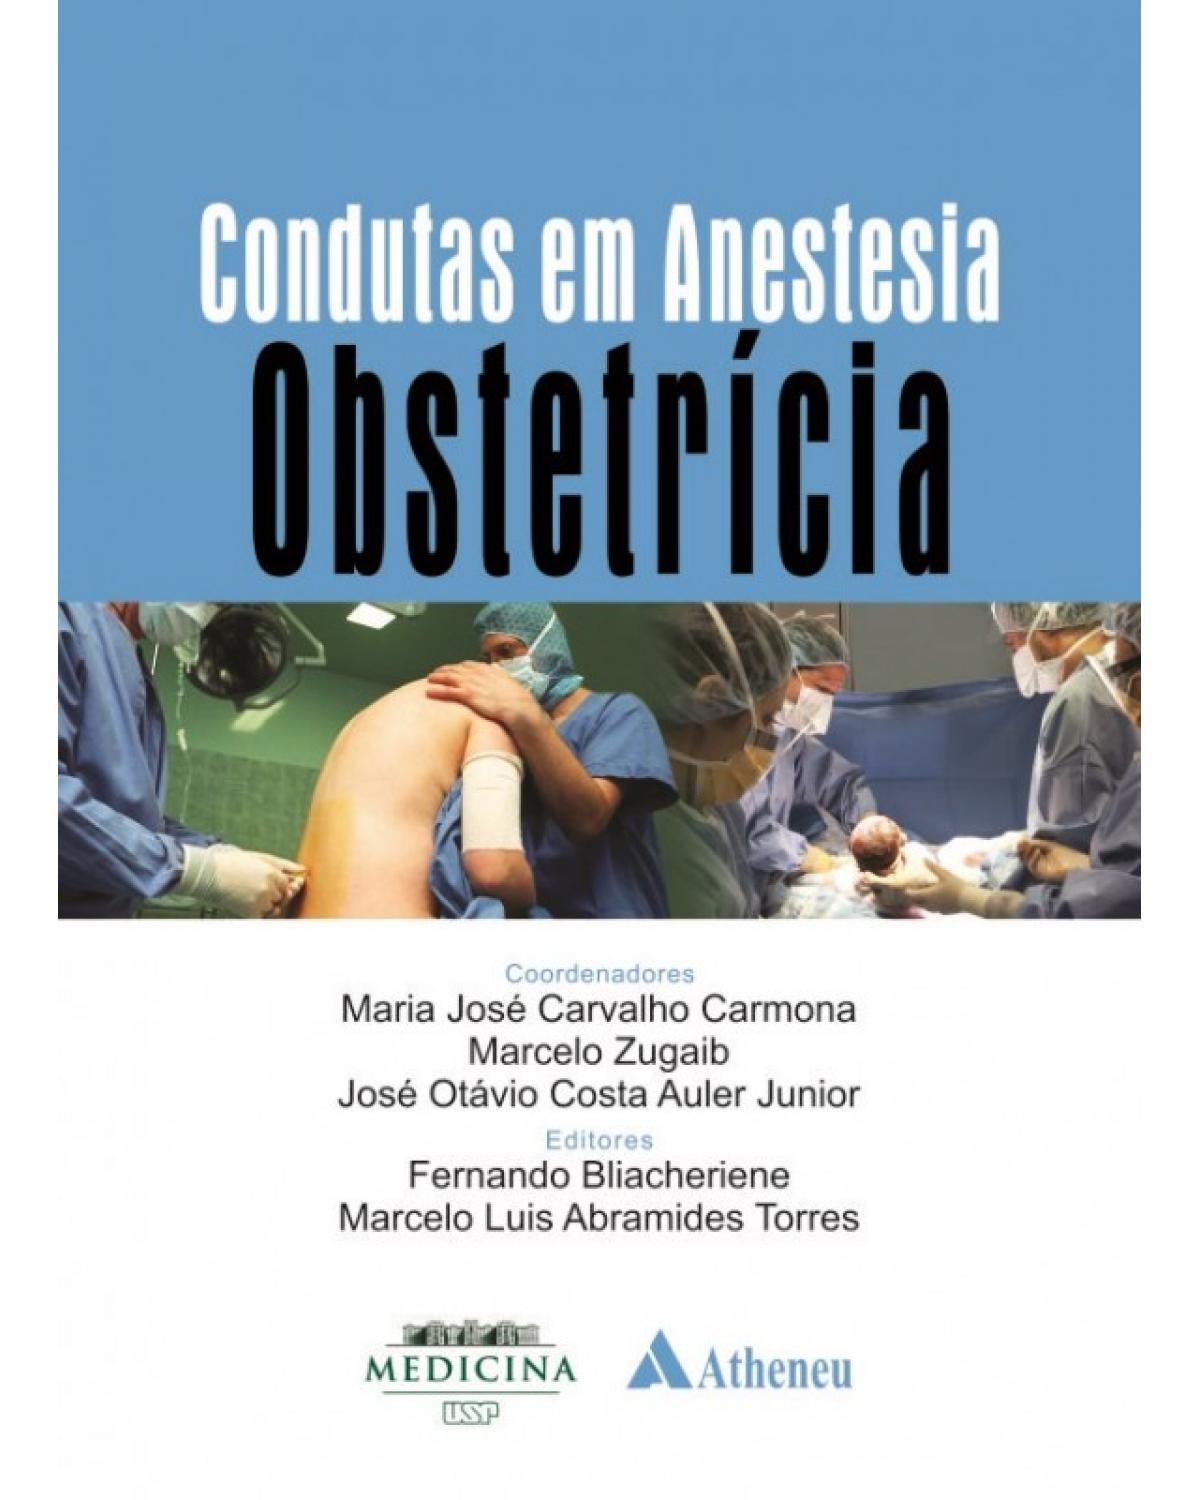 Condutas em anestesia - obstetrícia - 1ª Edição | 2014